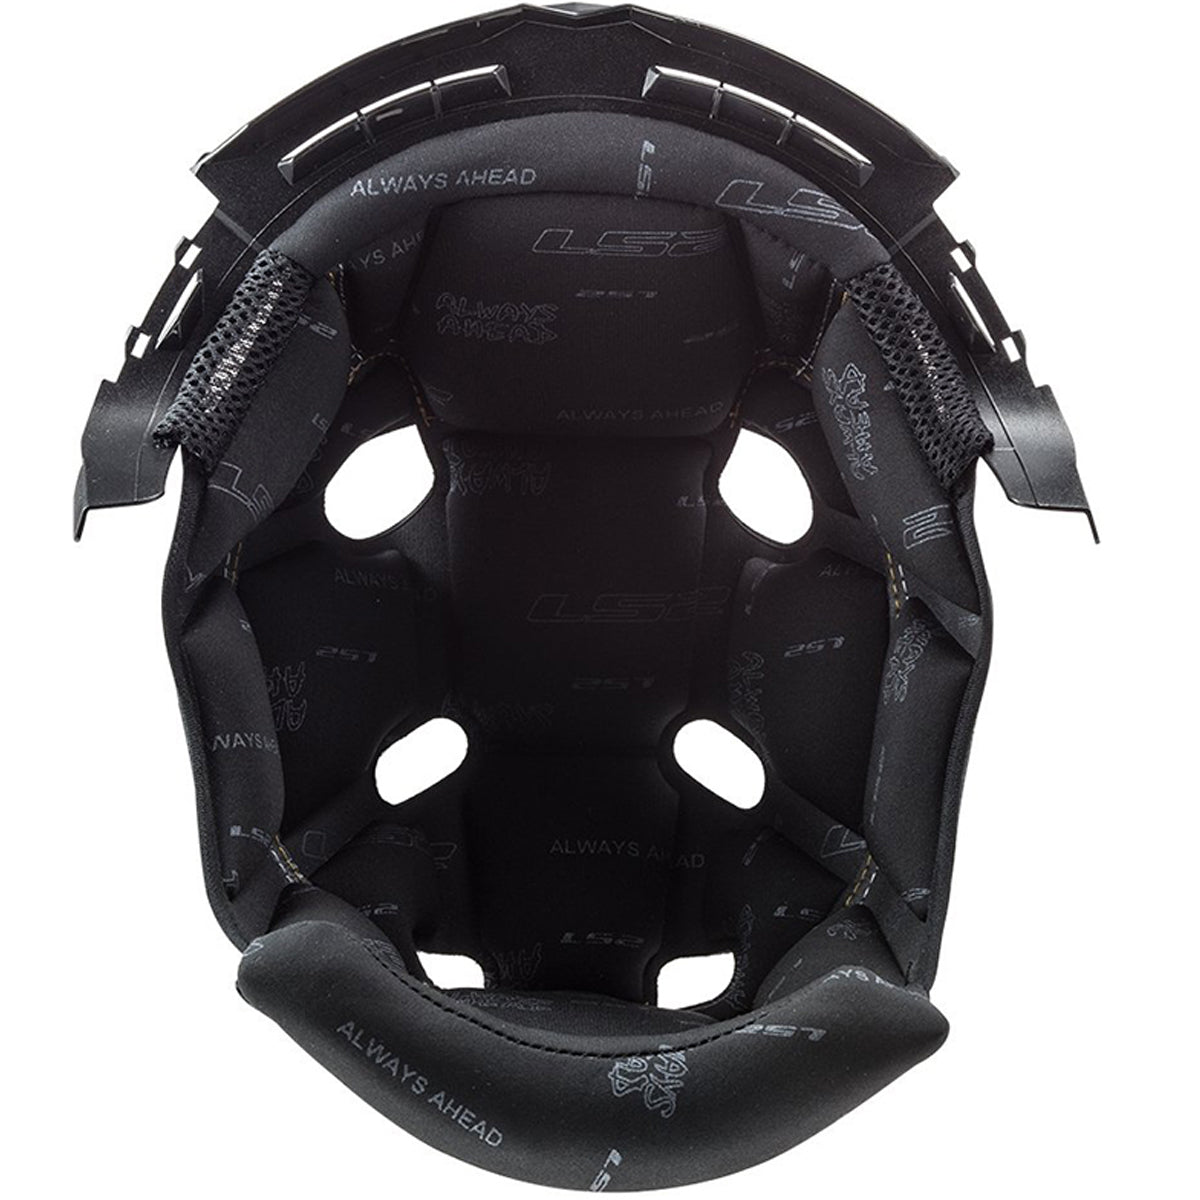 LS2 Subverter Blackout Liner Helmet Accessories-03-461